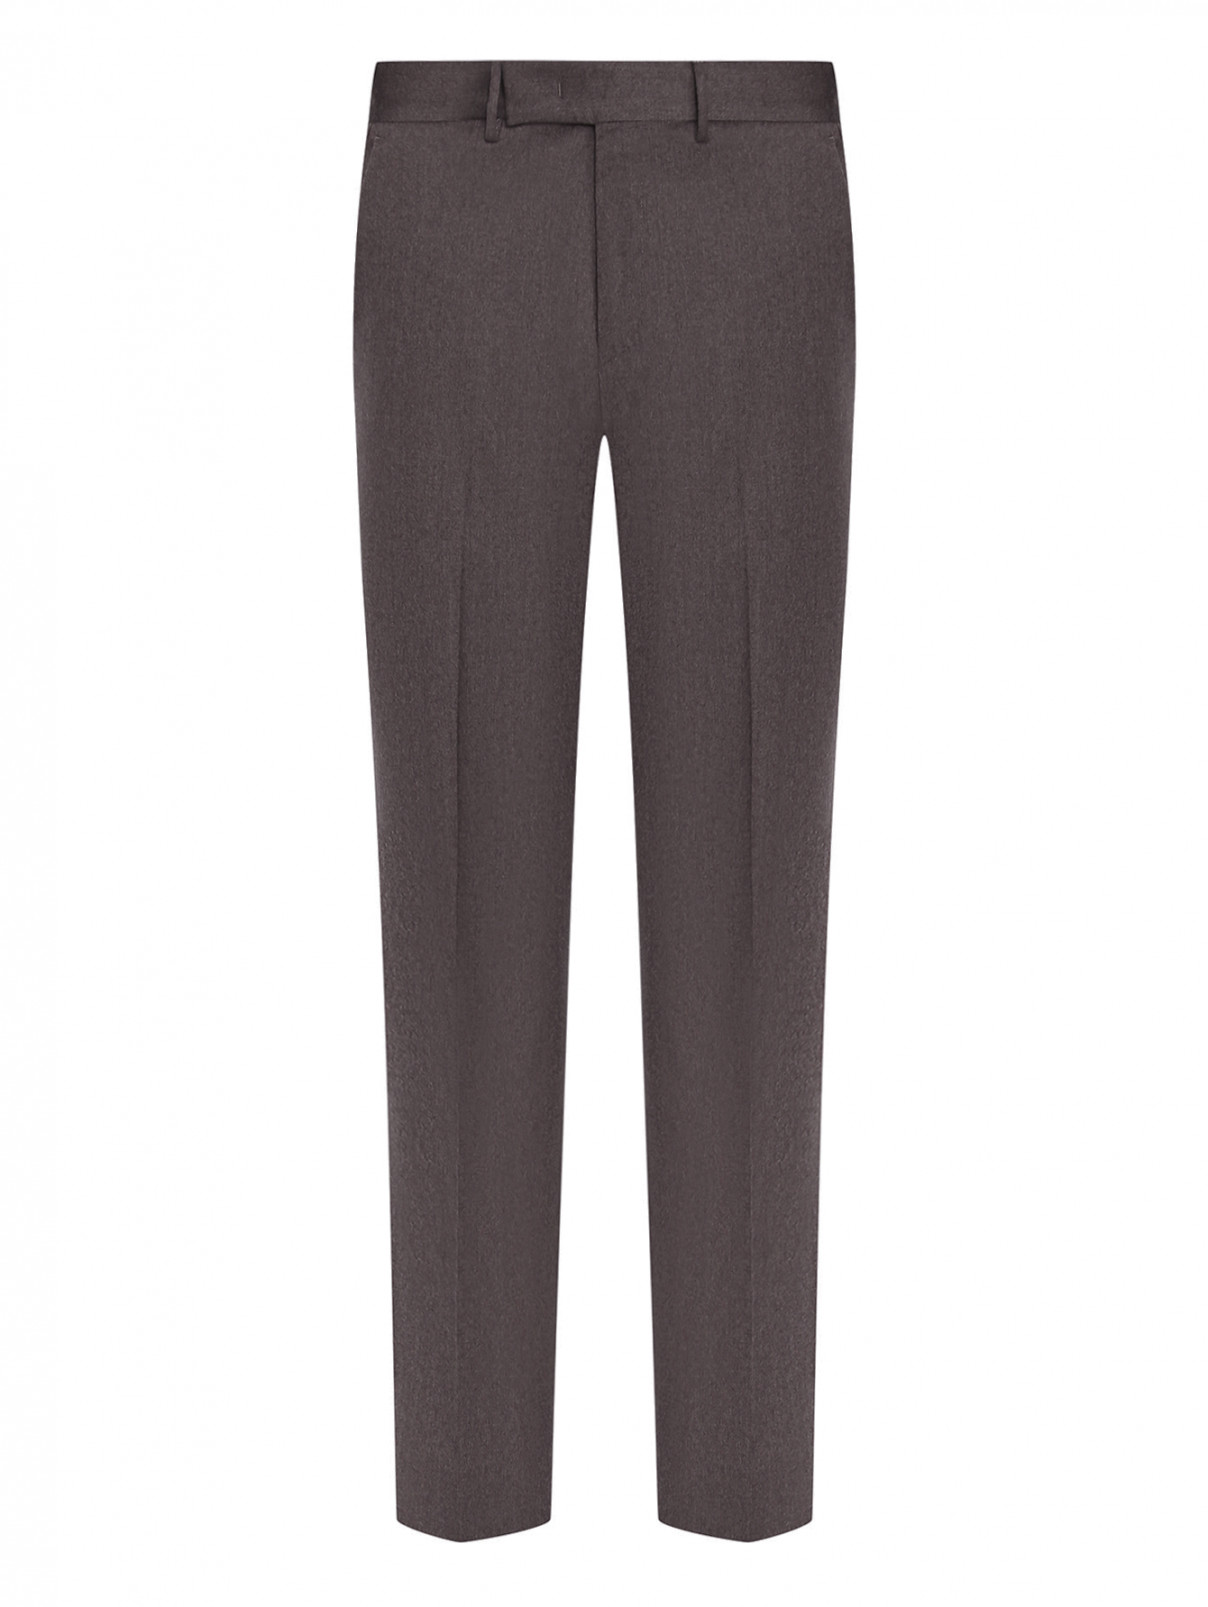 Зауженные брюки из шерсти PT Torino  –  Общий вид  – Цвет:  Коричневый